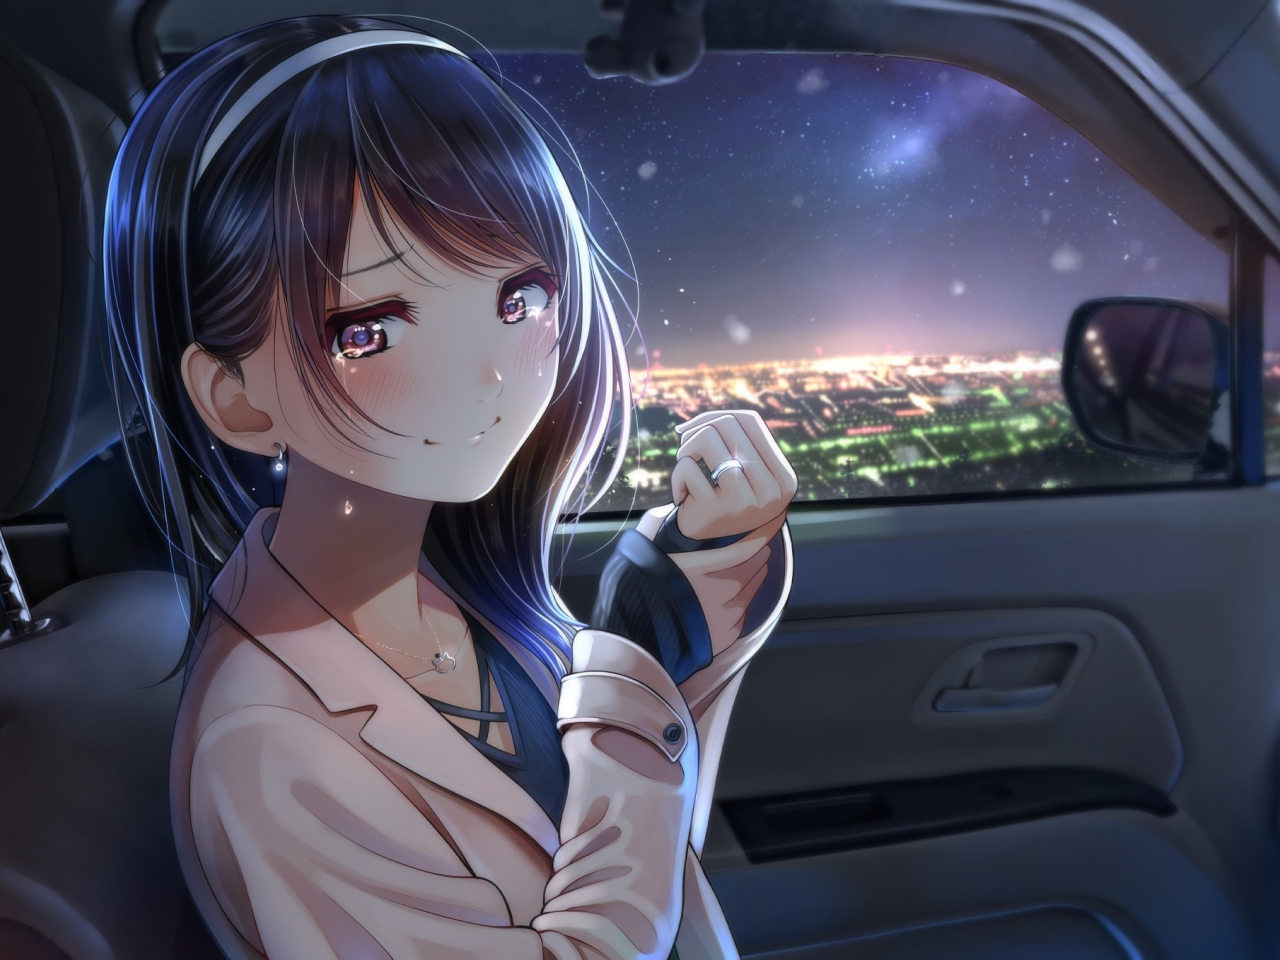 Cùng đón chào Anime Girl xinh đẹp của chúng tôi, cô nàng này có vẻ ngoài dễ thương và rất đáng yêu khi ngồi trong chiếc ô tô này. Bạn sẽ tìm thấy những bức ảnh tuyệt đẹp của cô ở đây, chắc chắn sẽ đem lại cho bạn nhiều trải nghiệm thú vị.